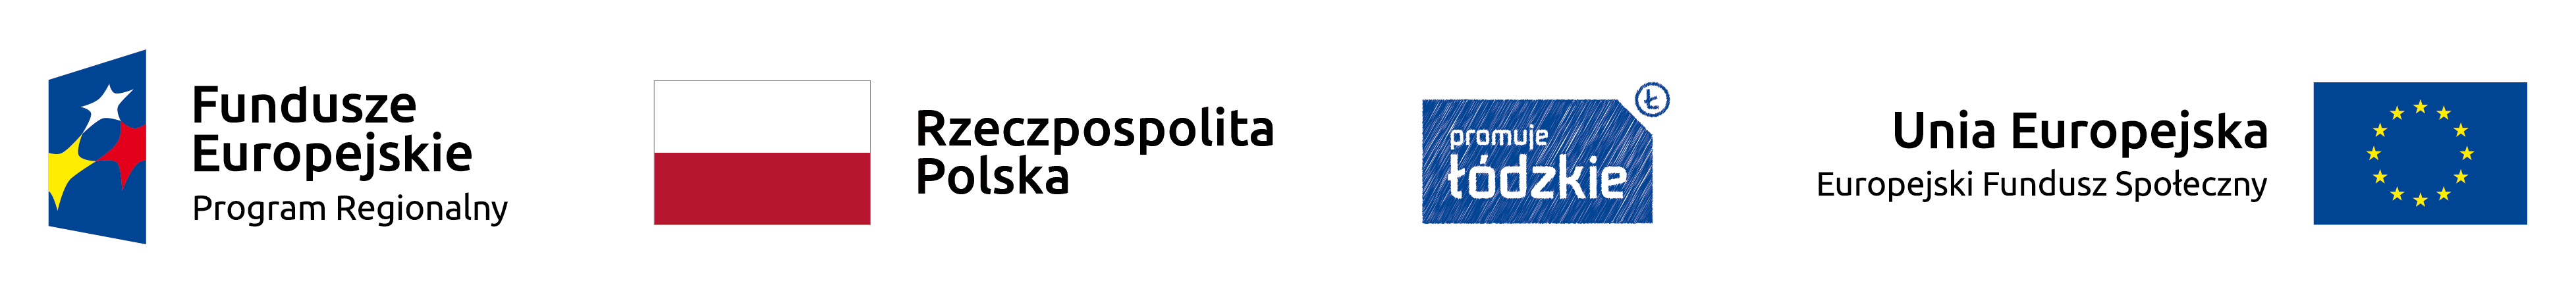 Logo Fundusze Europejskie, Rzeczypospolita Polska, Promuje Łódzkie, Unia Europejska